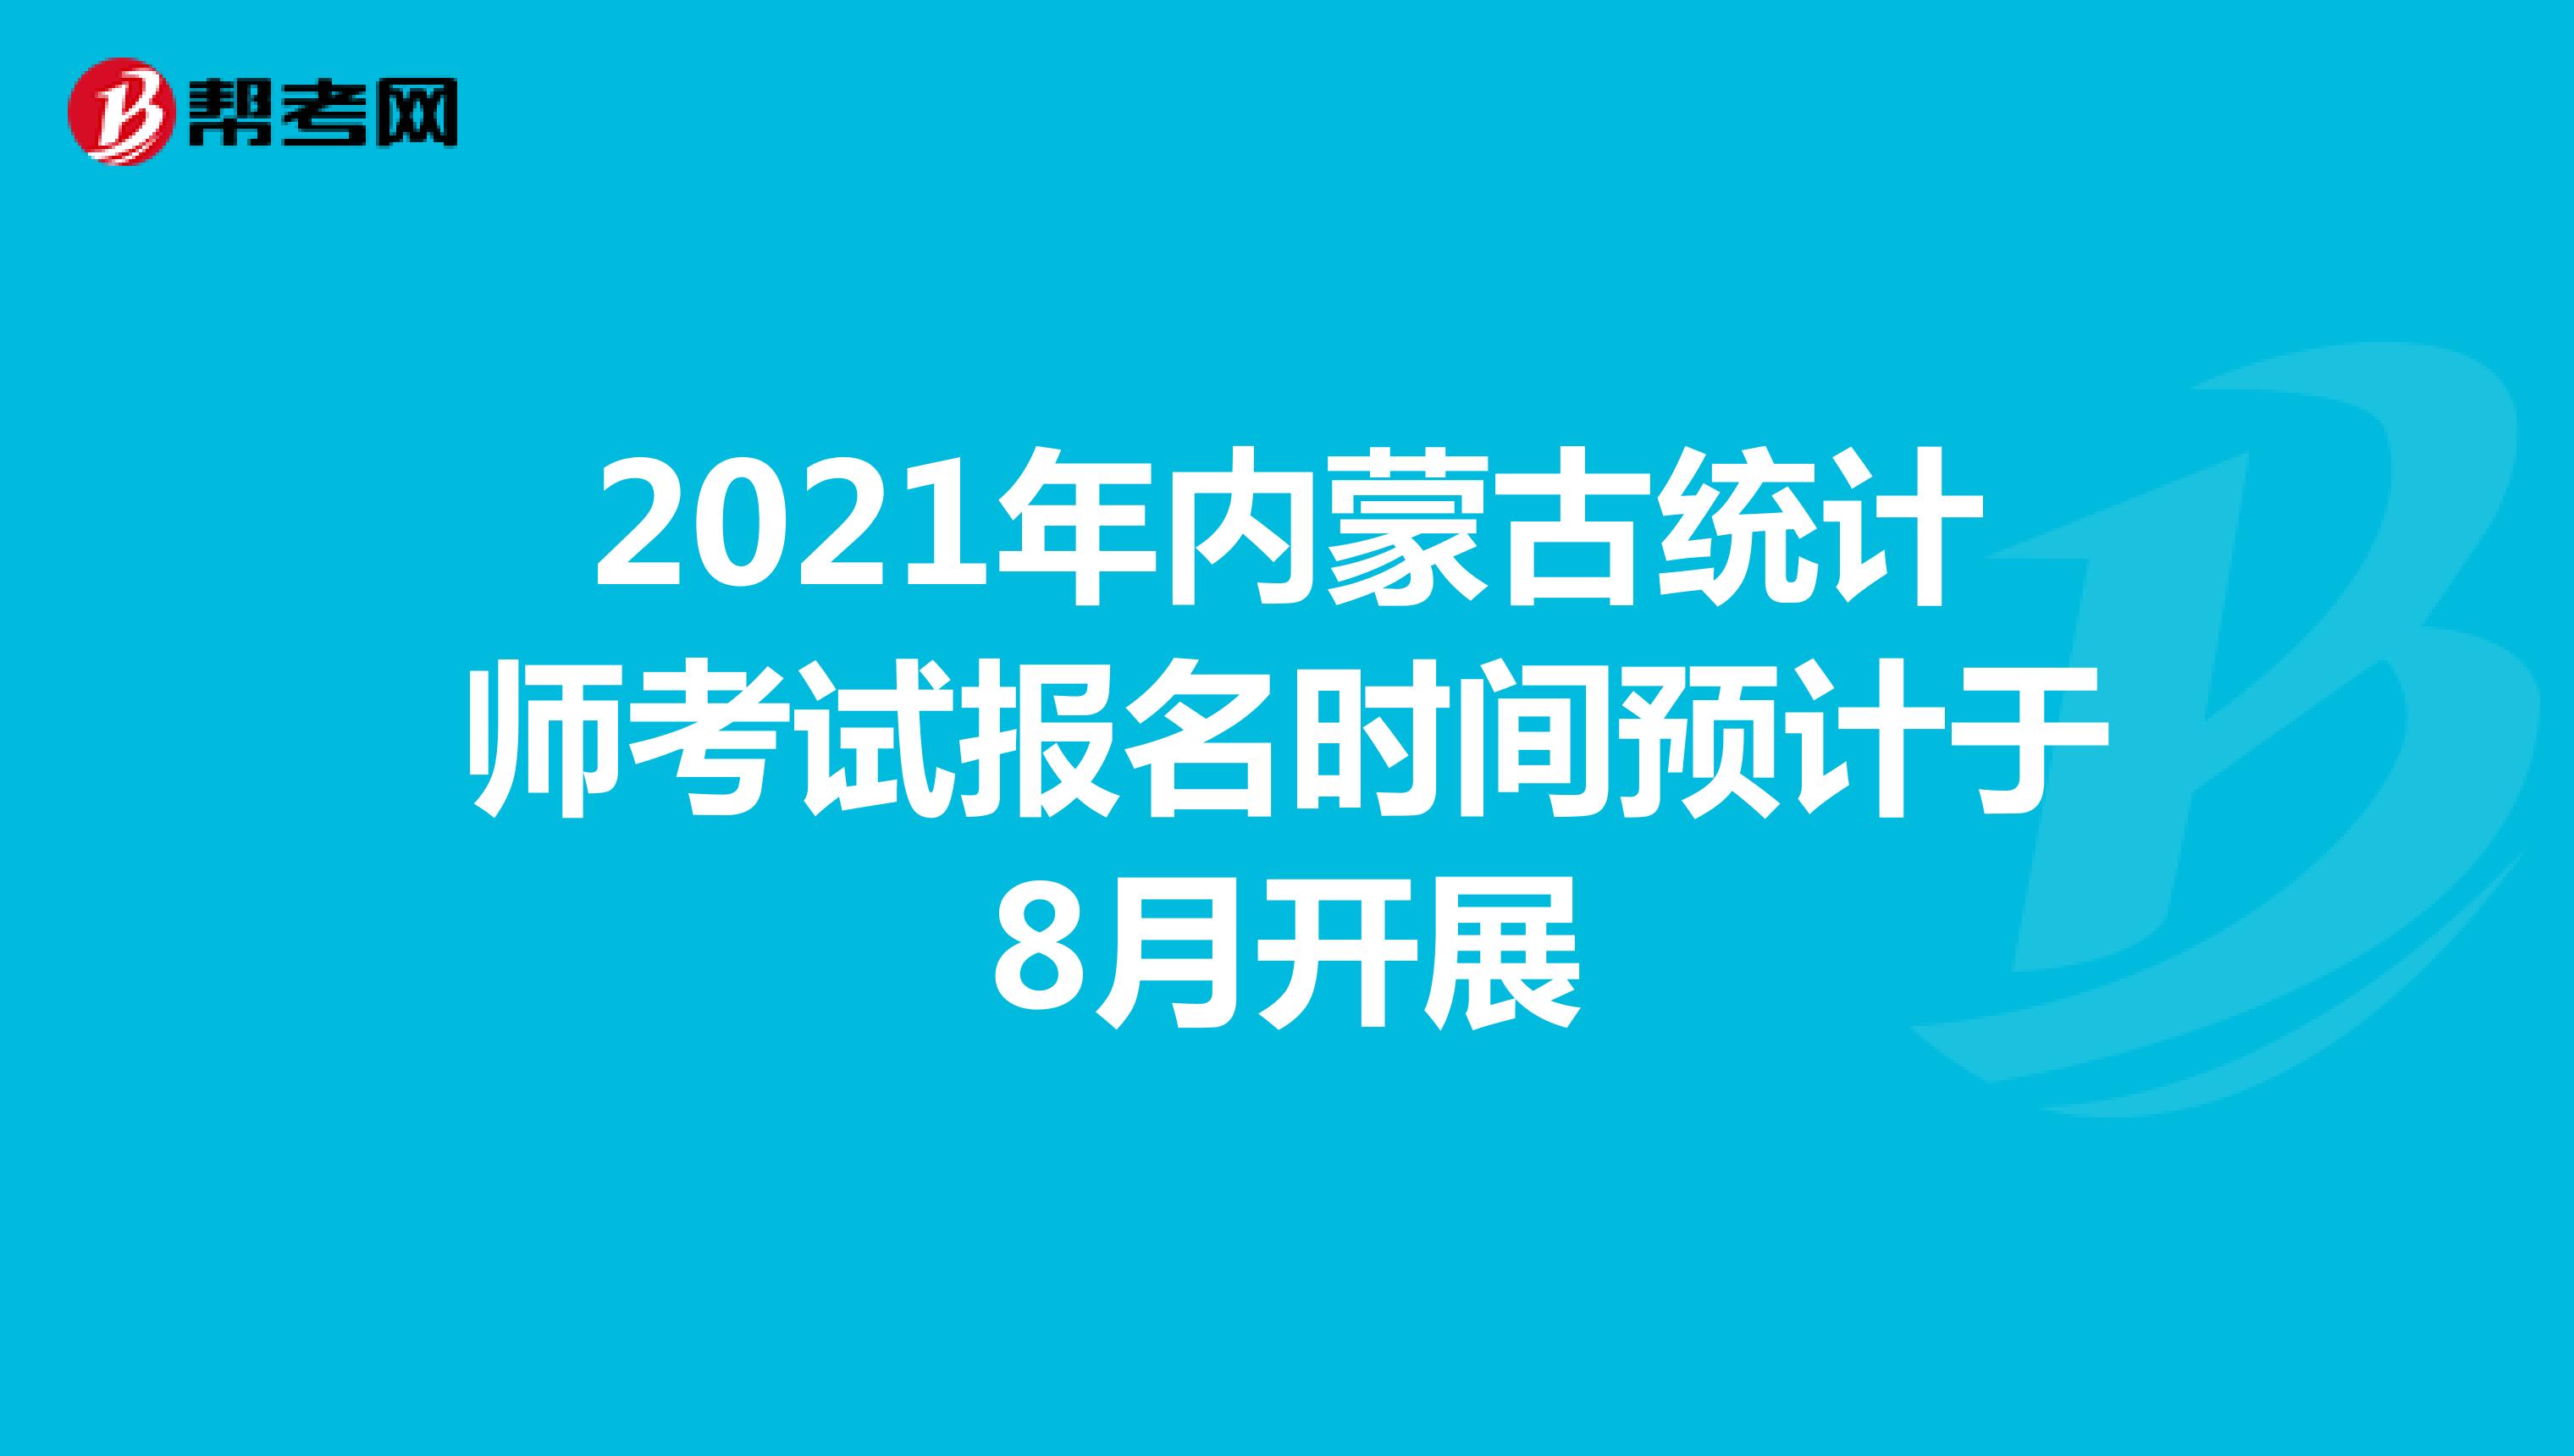 2021年内蒙古统计师考试报名时间预计于8月开展